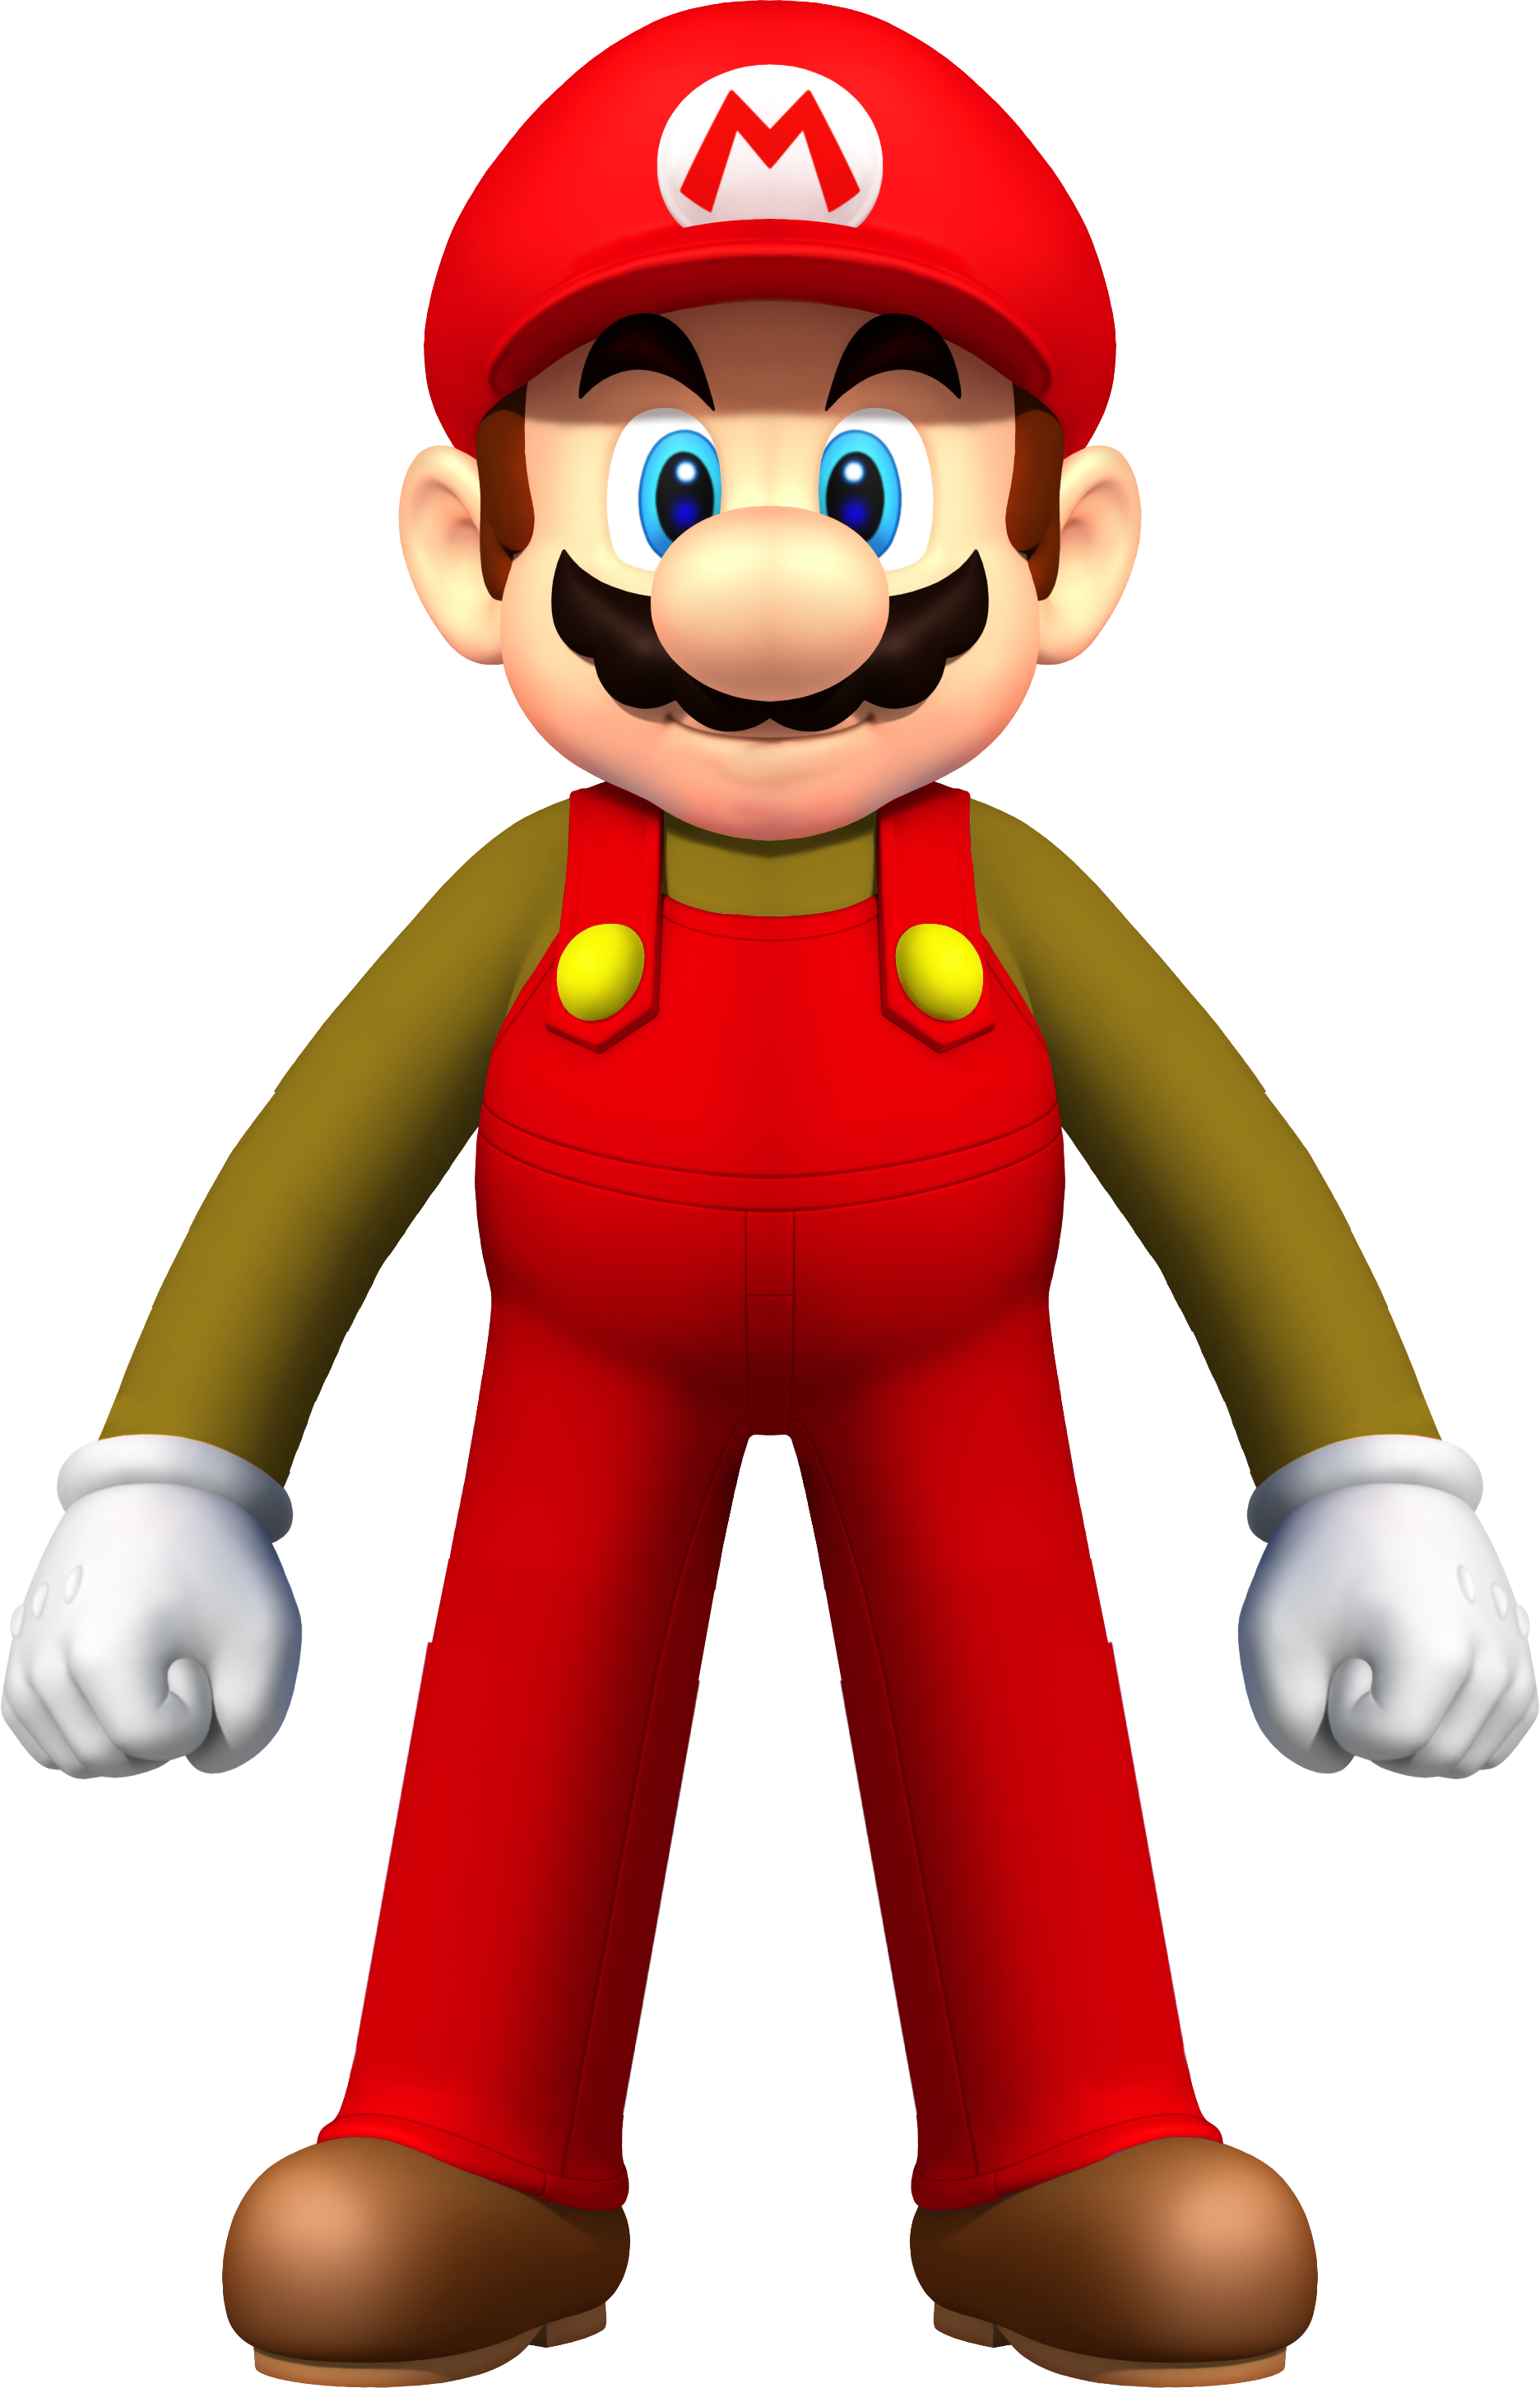 Mario classic mario